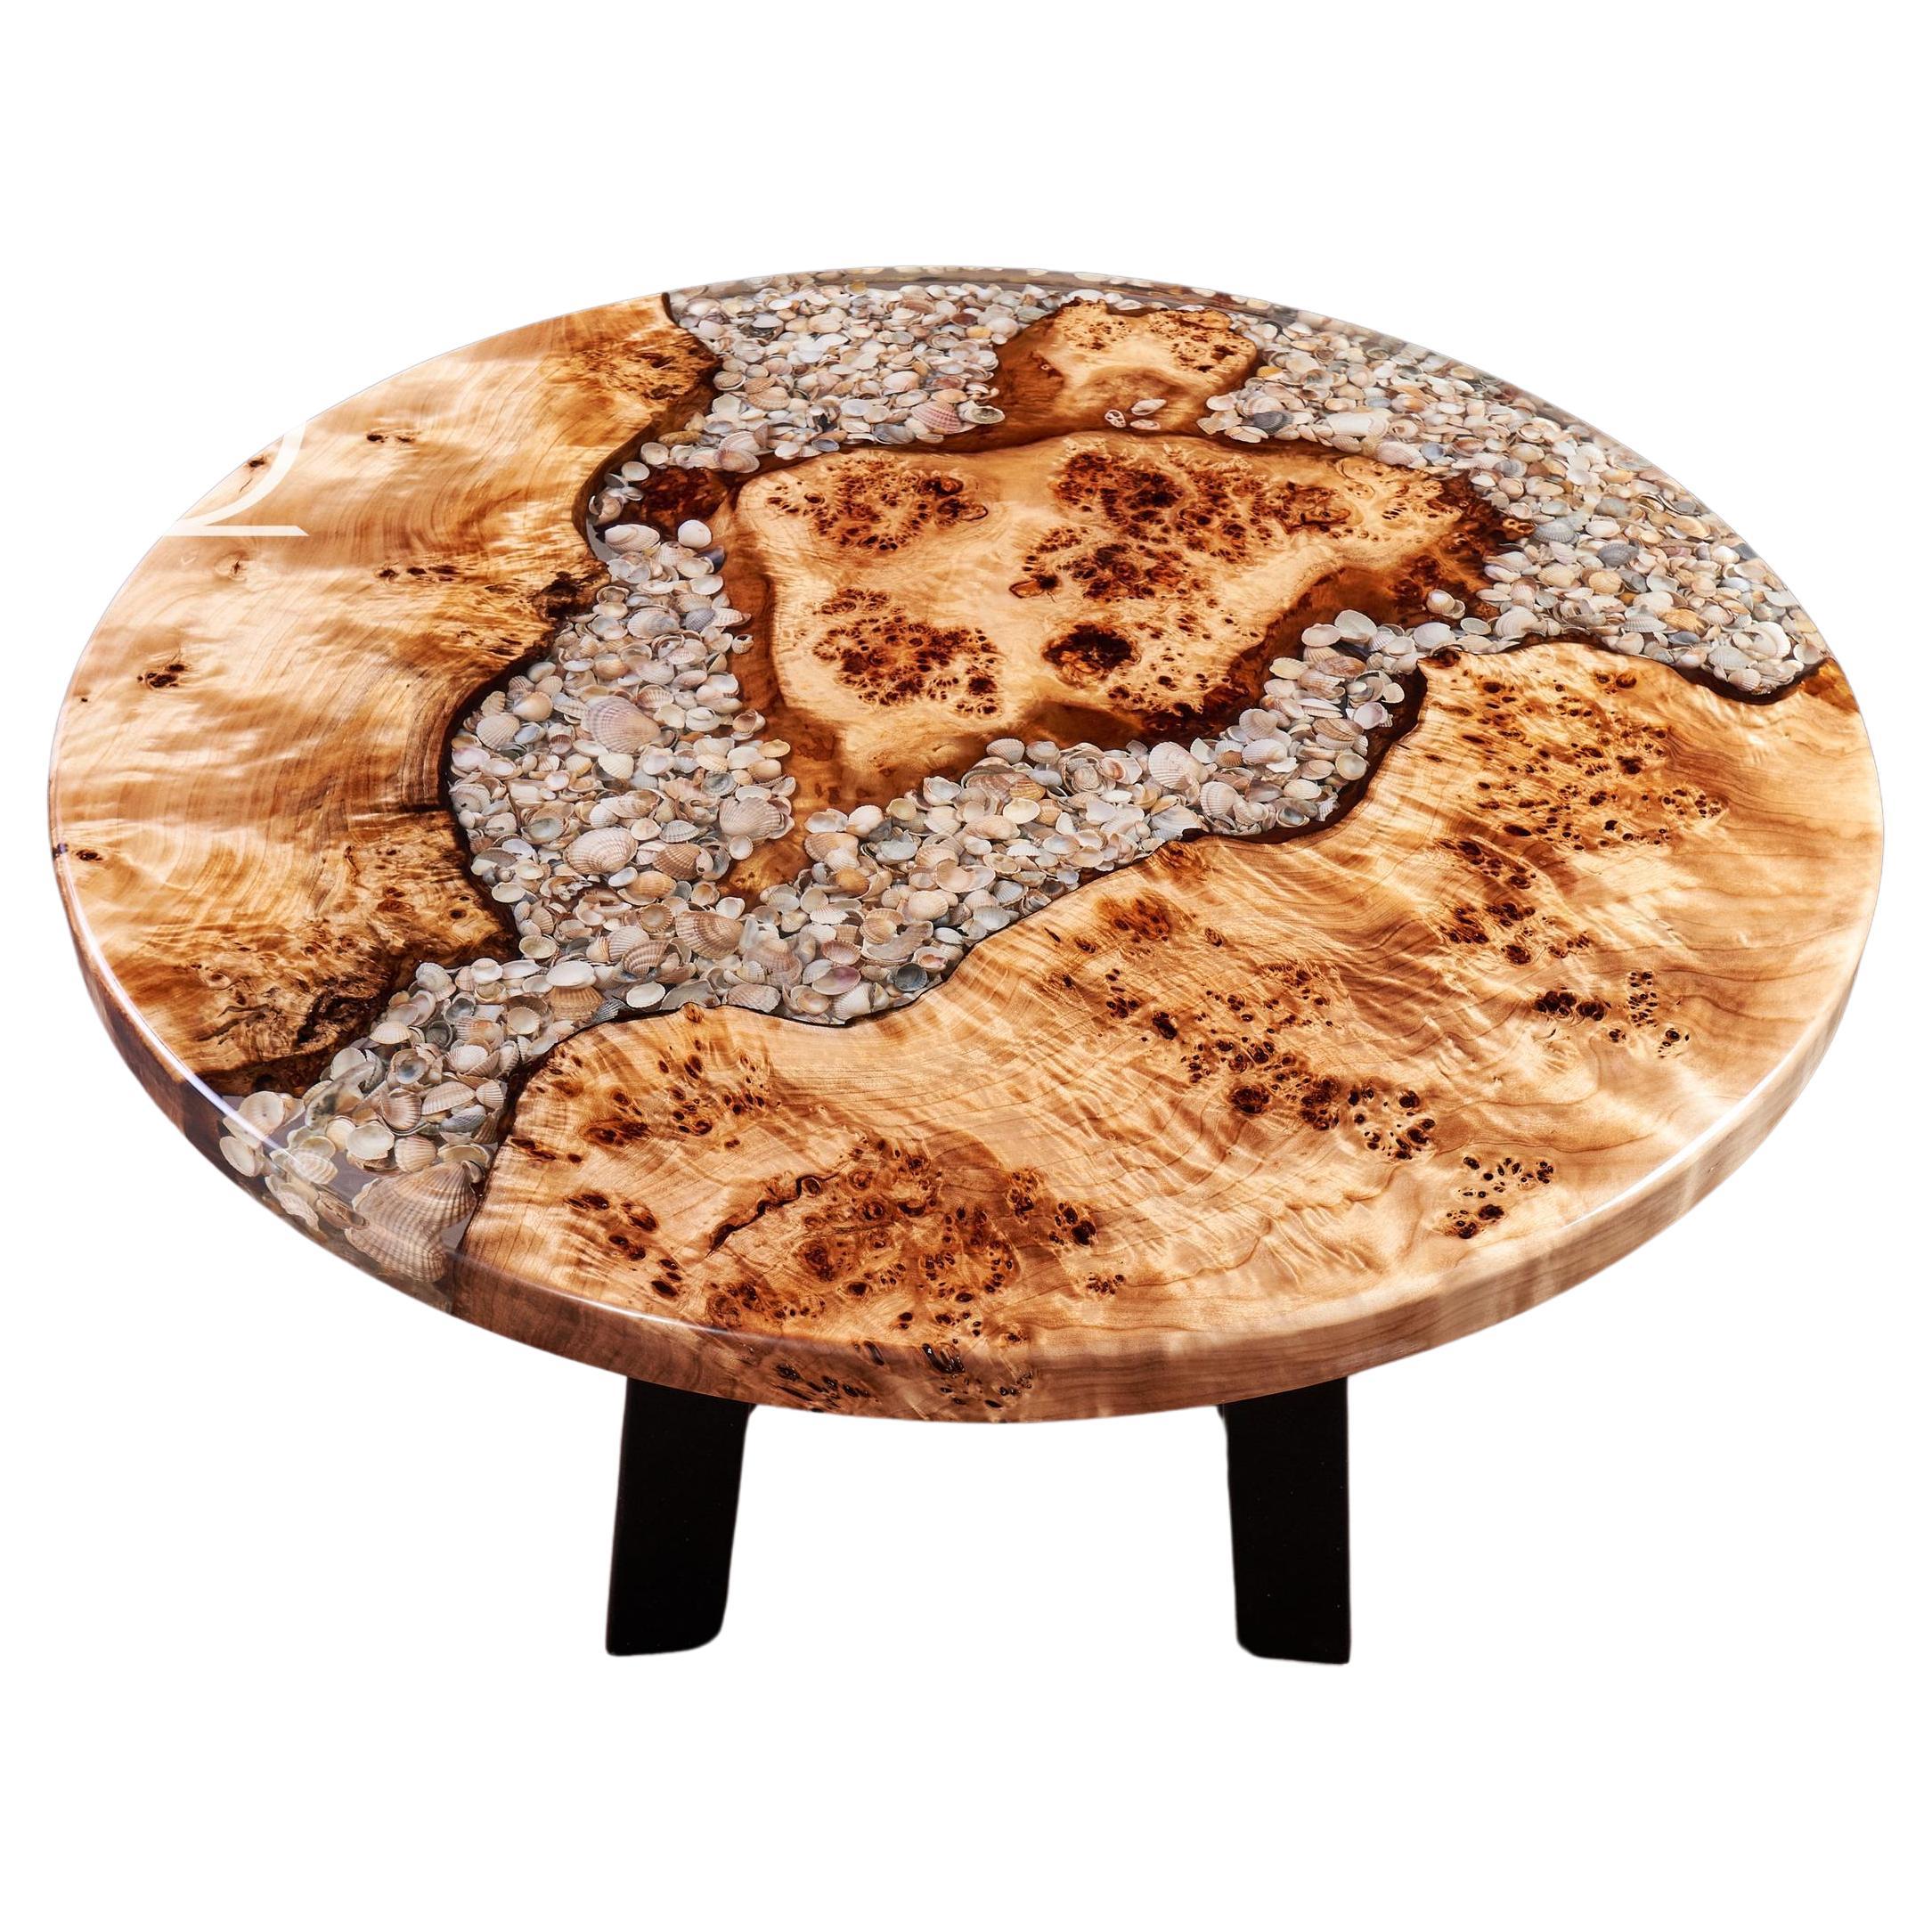 Wurzelholz Couchtisch Contemporary Modern Couchtisch Round Wooden Resin Table